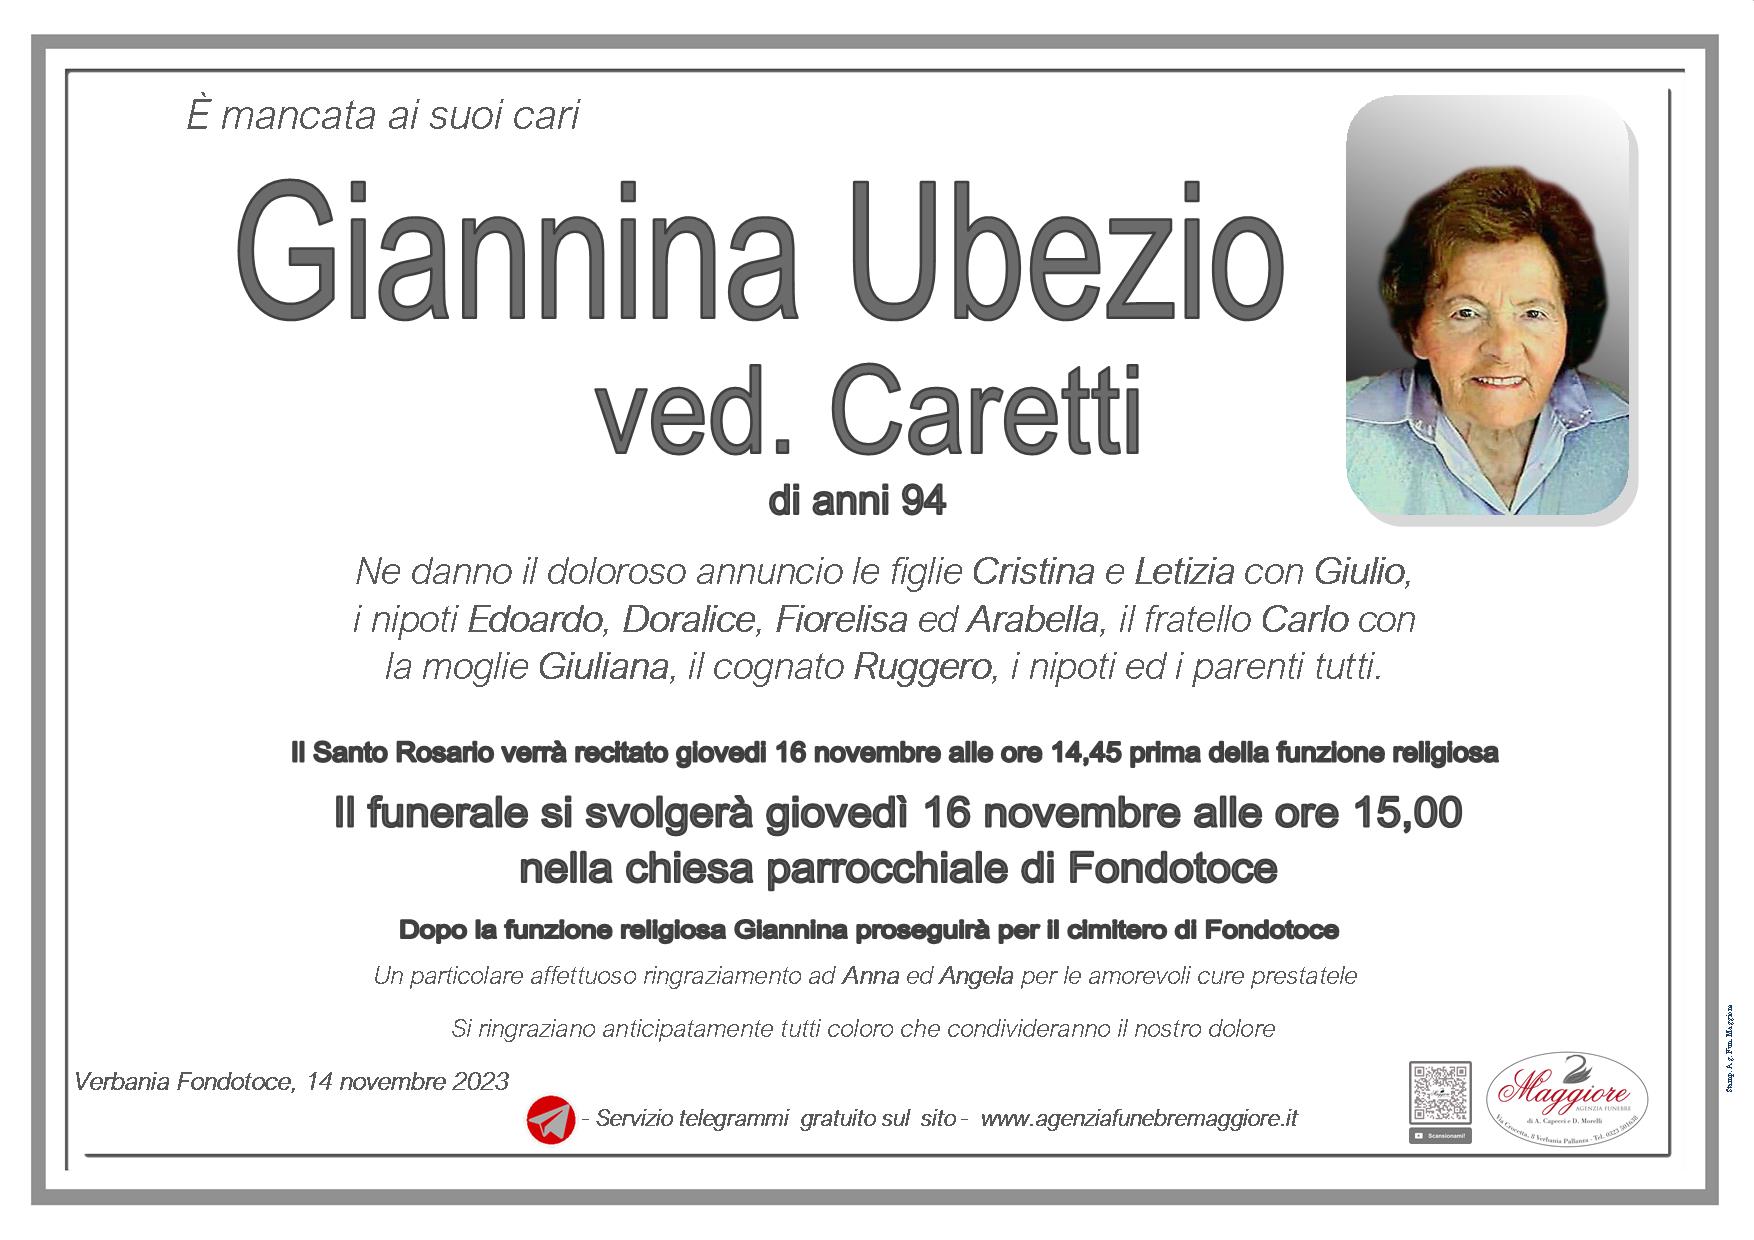 Giannina Ubezio ved. Caretti